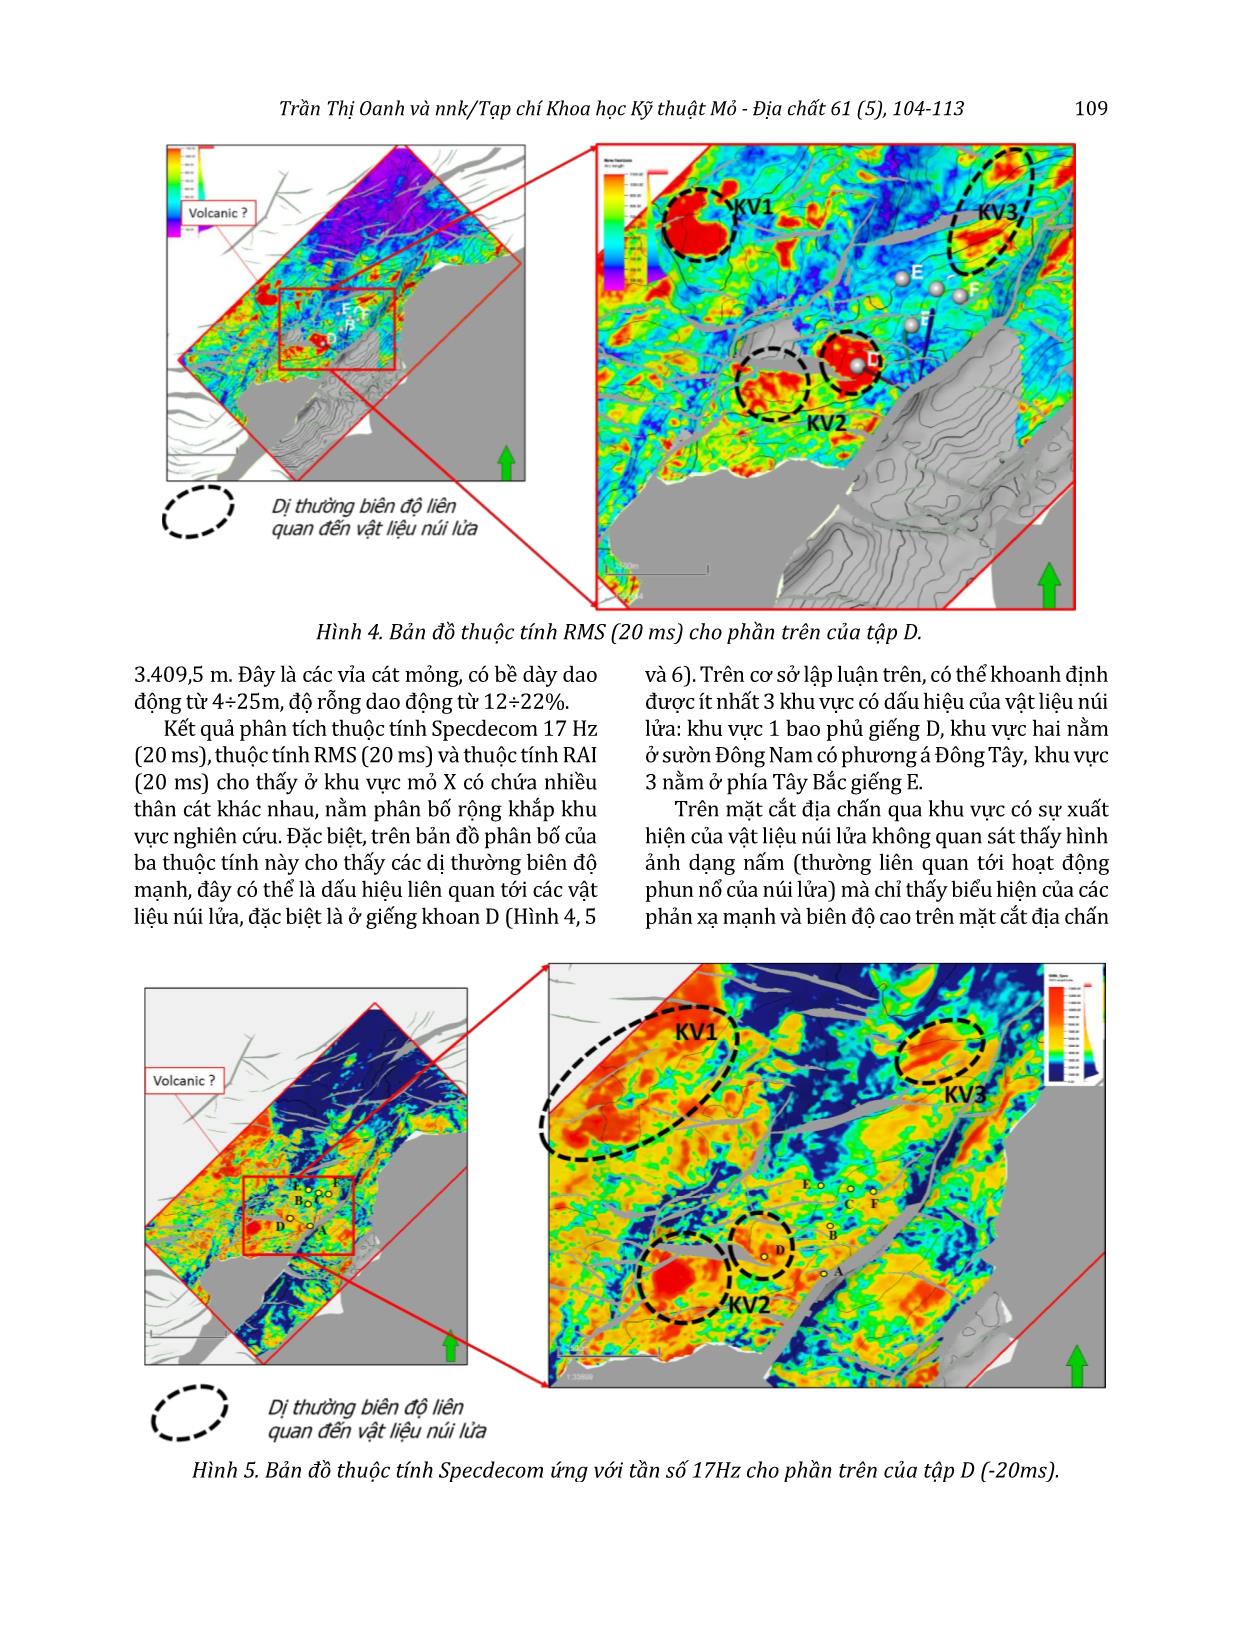 Ứng dụng mạng trí tuệ nhân tạo dự báo phân bố vật liệu núi lửa trong tập D, mỏ X, bể Cửu Long trang 6